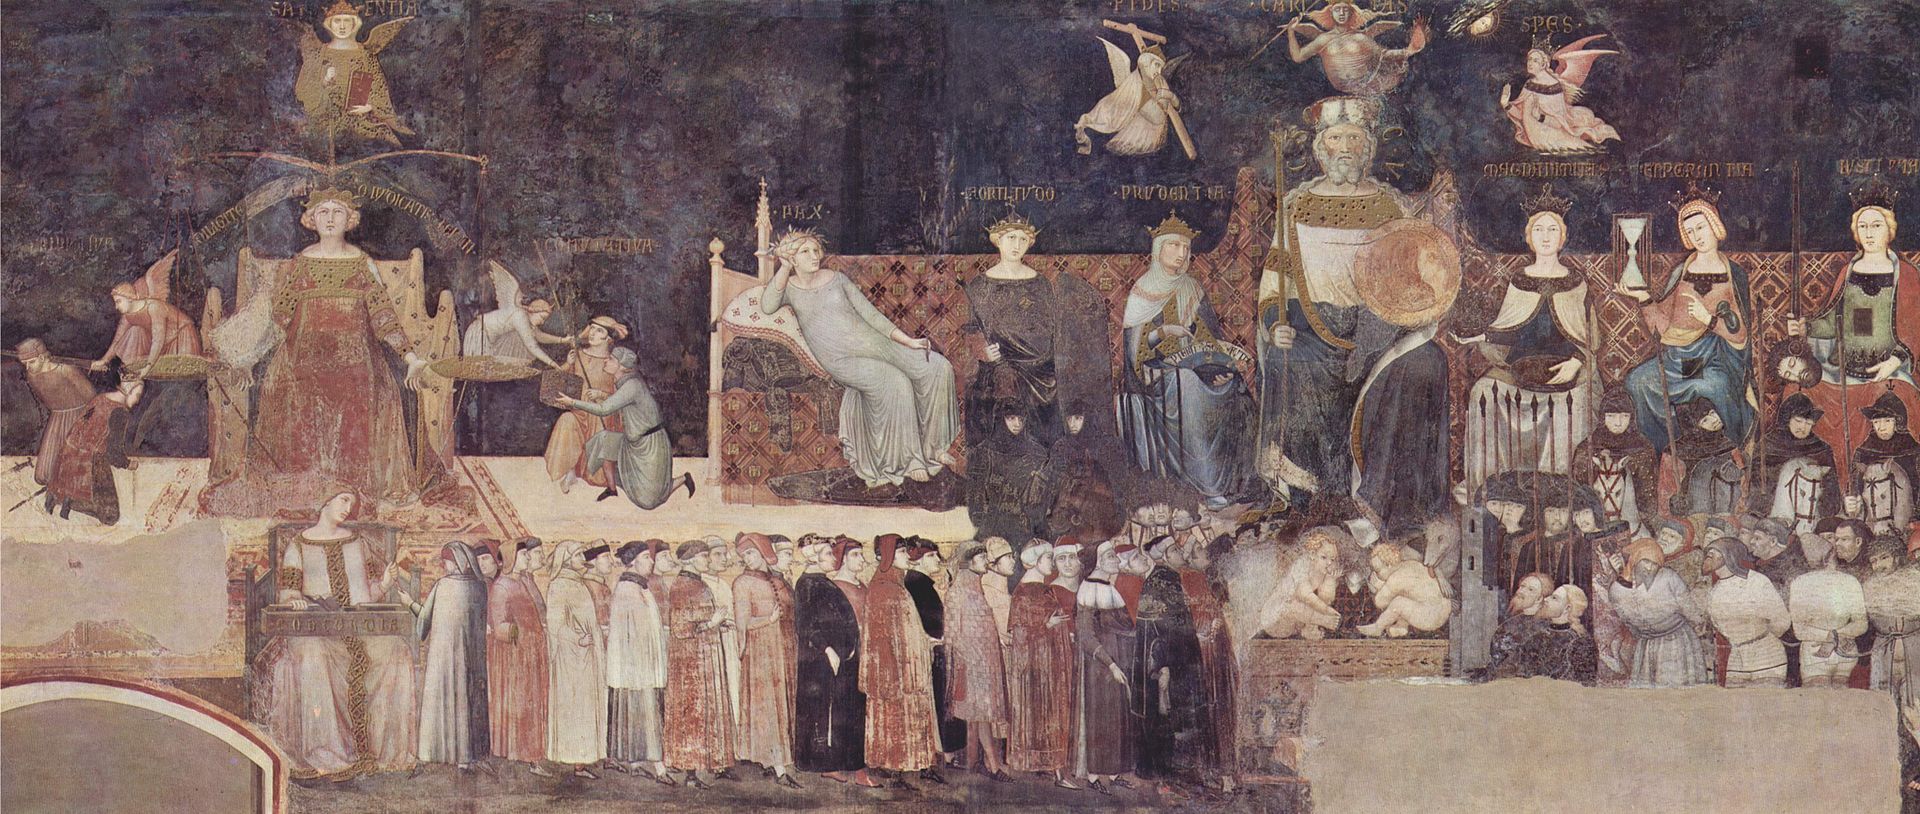 Ambrogio Lorenzetti, Allegoria del Buon Governo, 1338